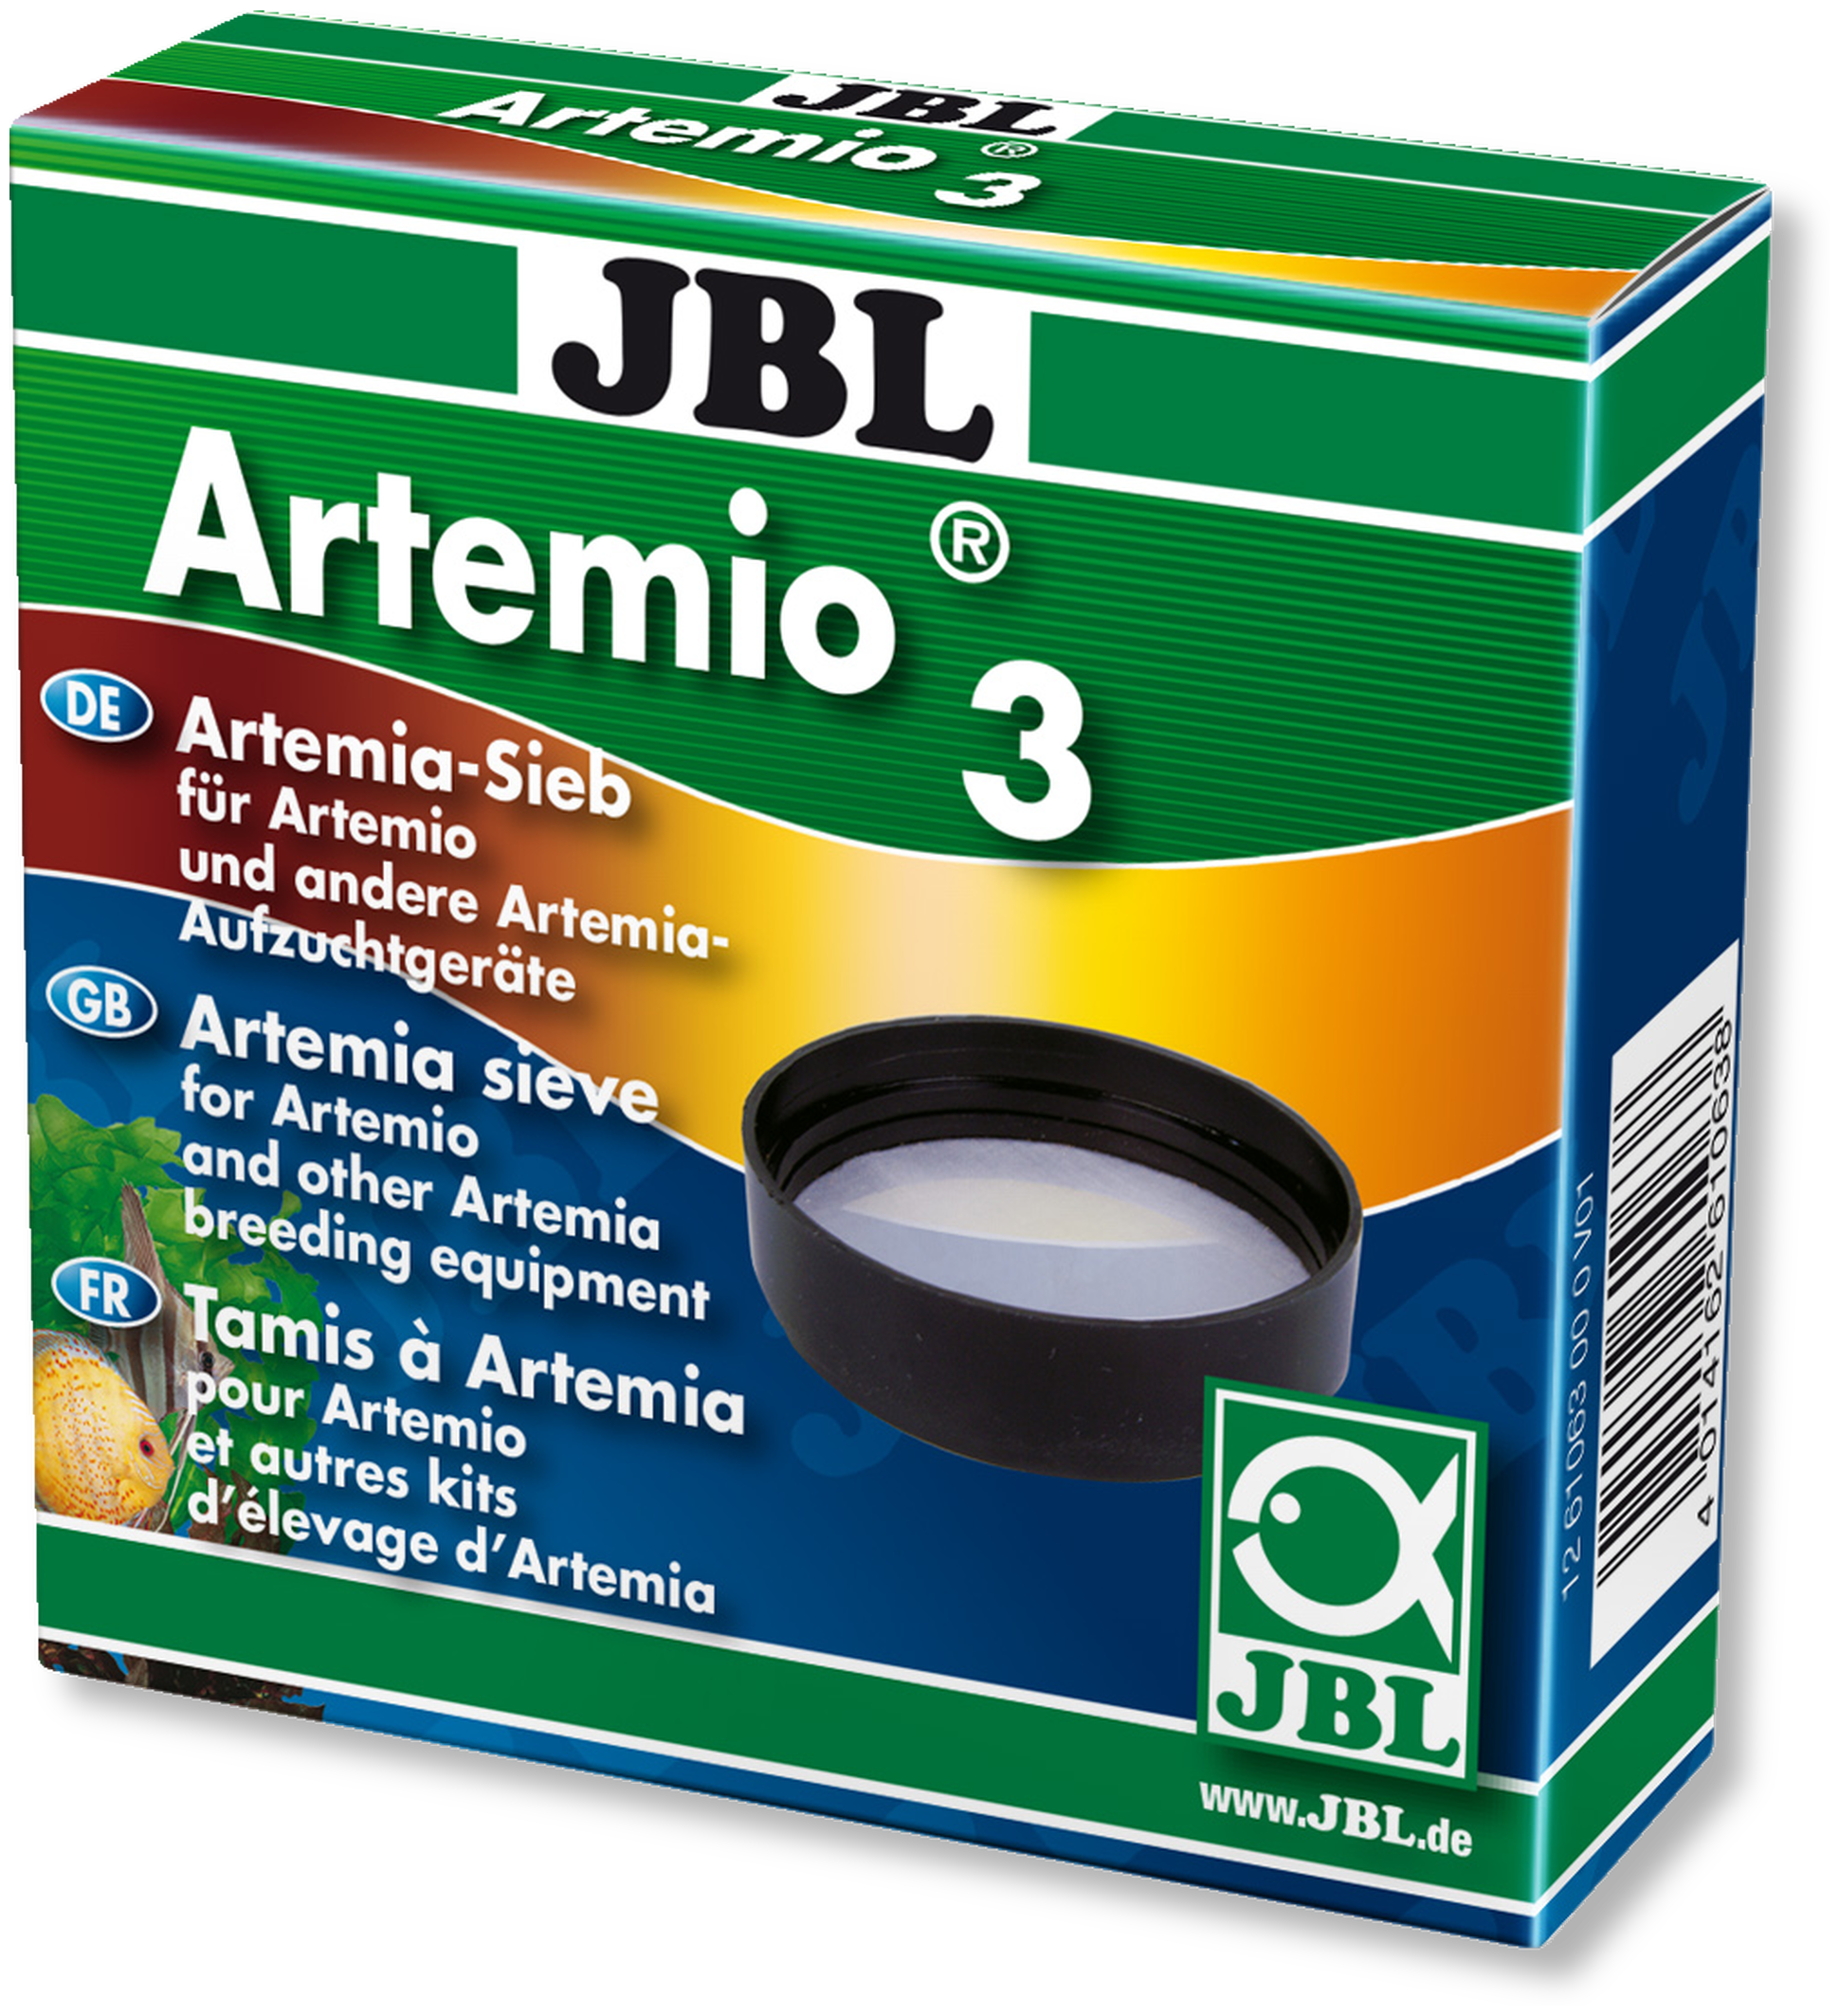 JBL Artemio 3 (Sieb)